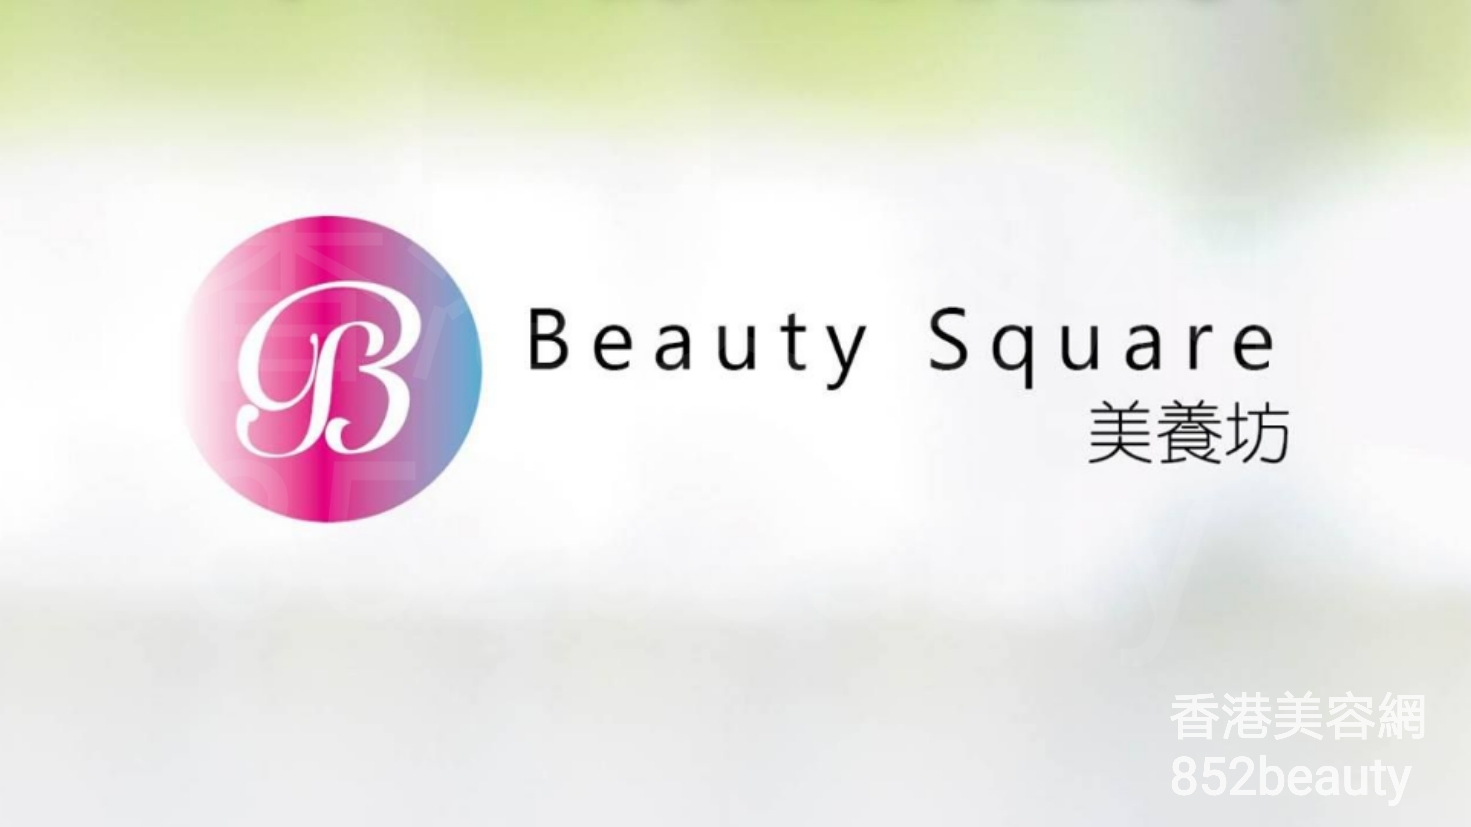 美容院 Beauty Salon: 美養坊 Beauty Square (光榮結業)